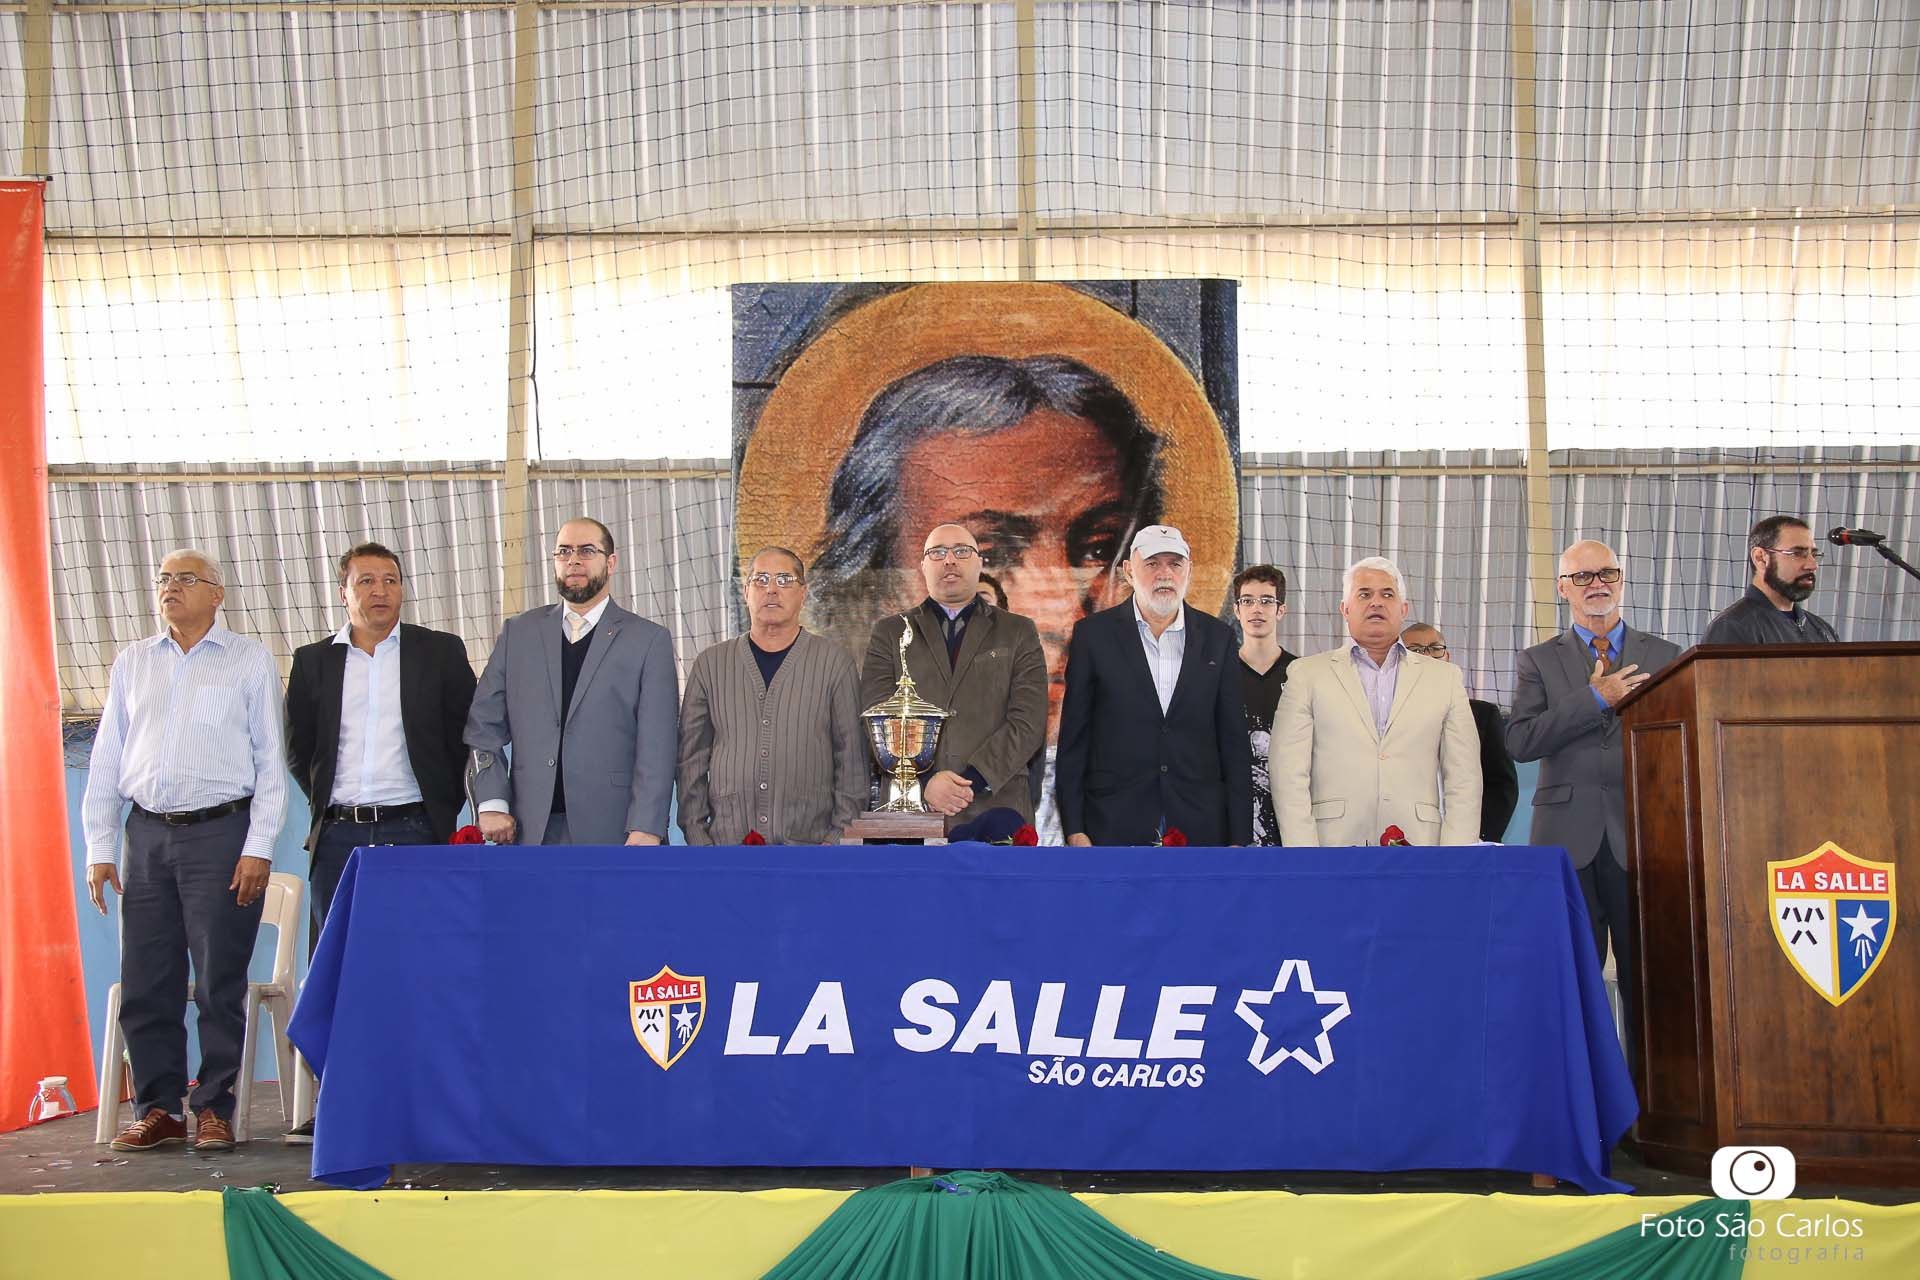 60º Olimpiadas La Salle São Carlos - Solenidade de Abertura